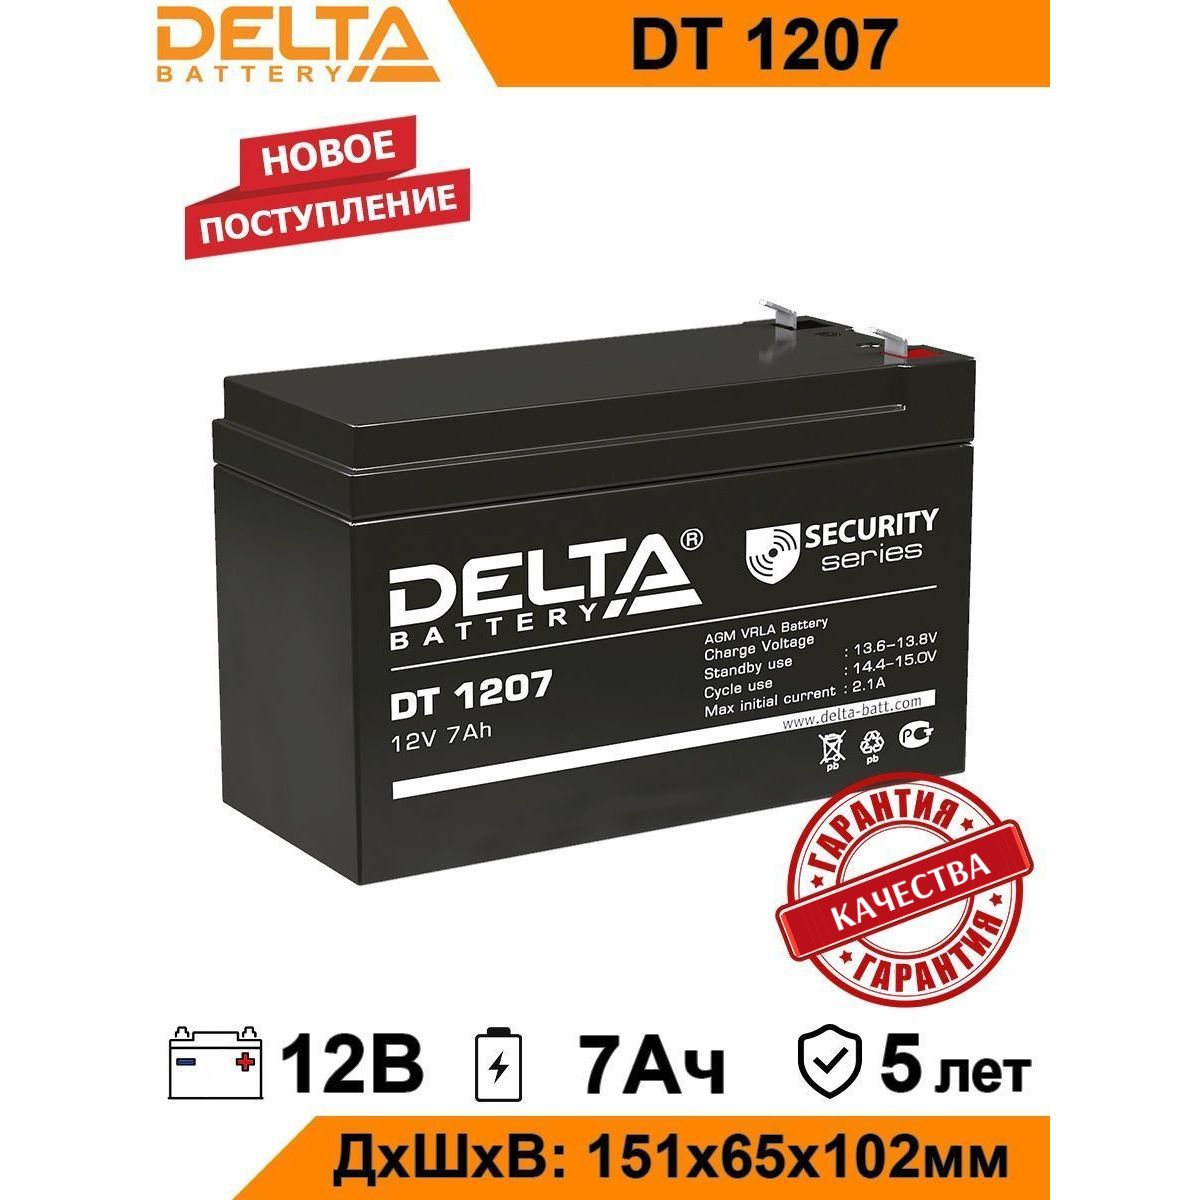 Аккумулятор 1207 12v 7ah. Акк.бат. Delta DT 1207 (12v 7ah). Аккумулятор стартерный Delta DT 1207. Siltech аккумулятор SPS 1207 12v7ah. DT 1207 аккумуляторная батарея, напряжением 12в и емкостью 7ач.